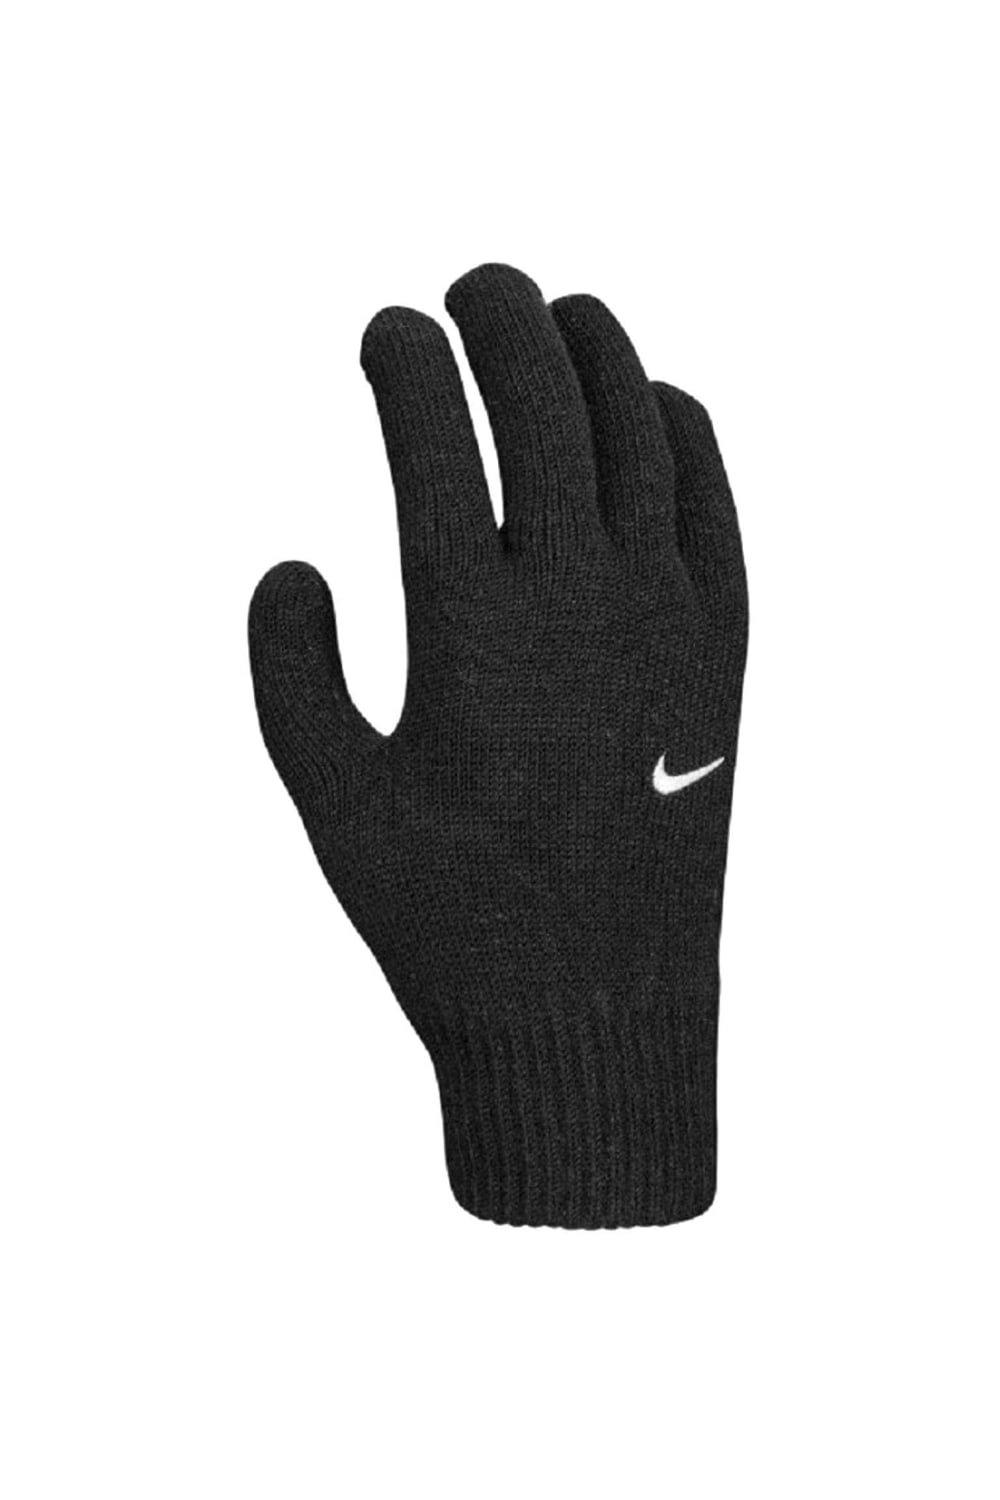 Вязаные перчатки с галочкой Tech Grip 2.0 Nike, черный галочка серая